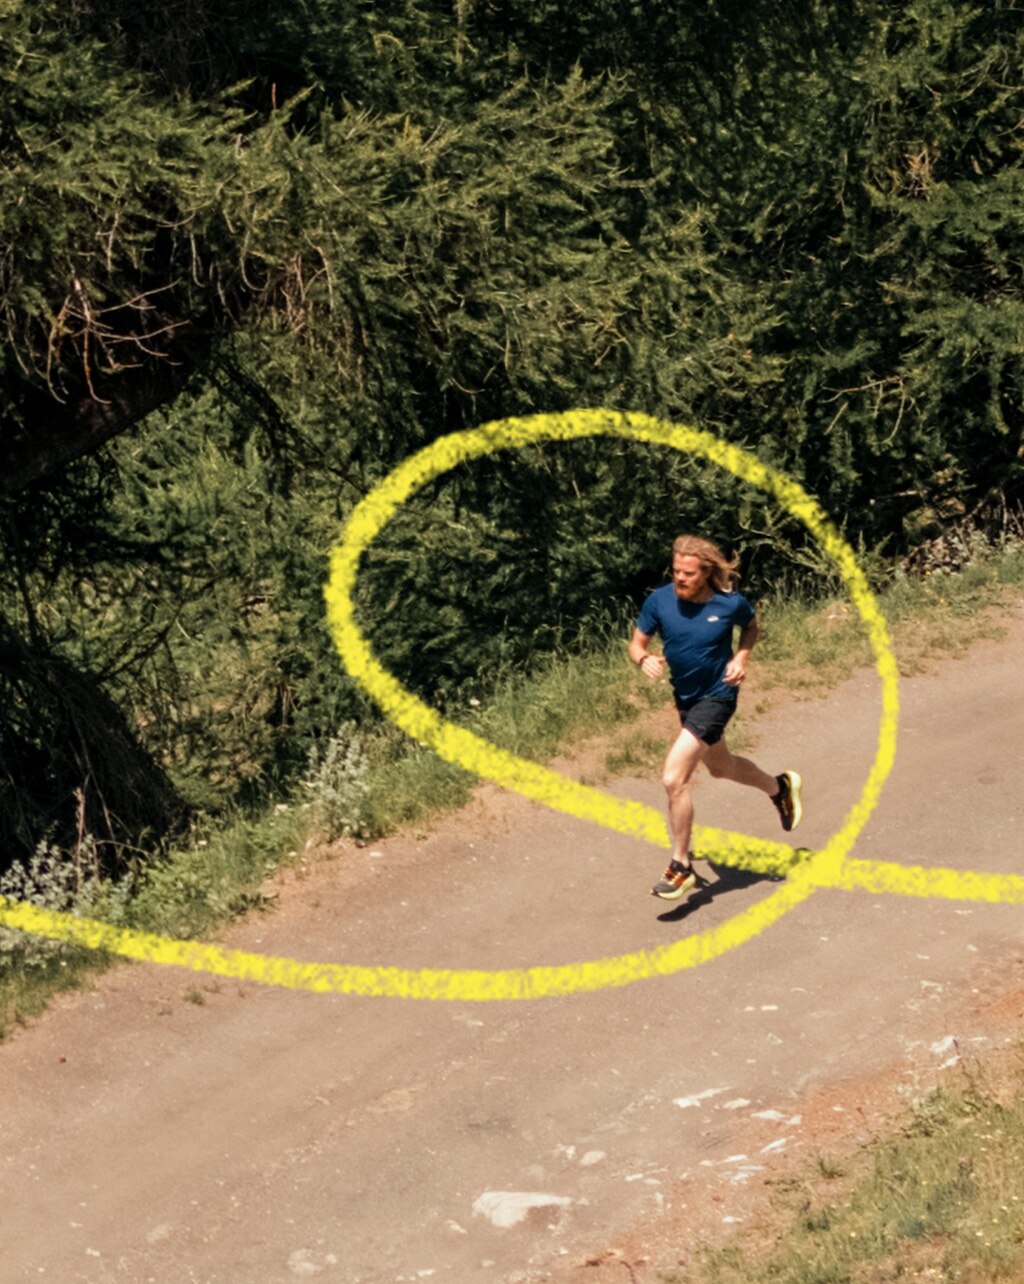 Hombre en un sendero en el bosque practicando trail running